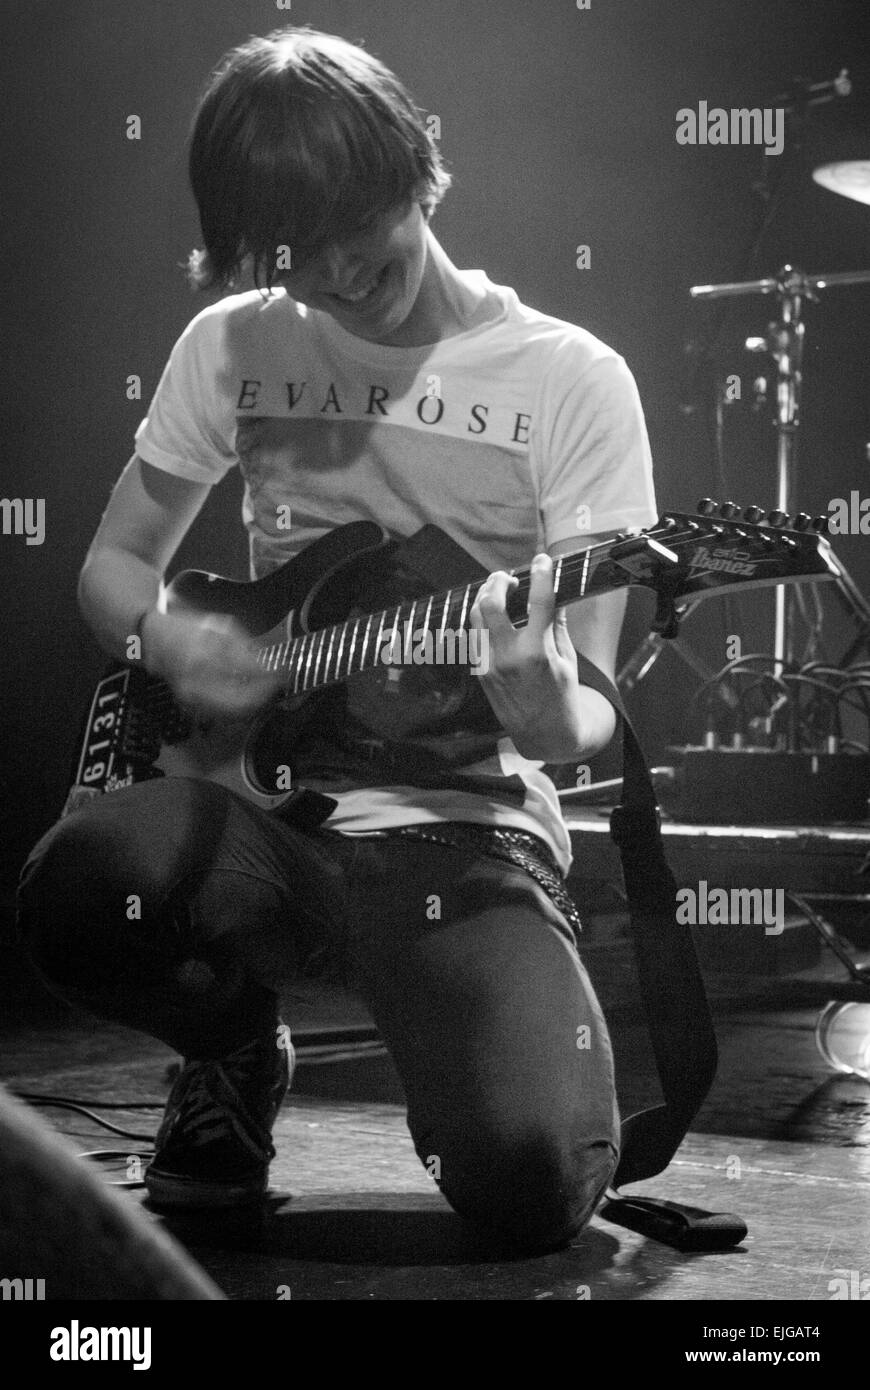 Man playing guitar on stage wearing an Eva Rose t-shirt but ...